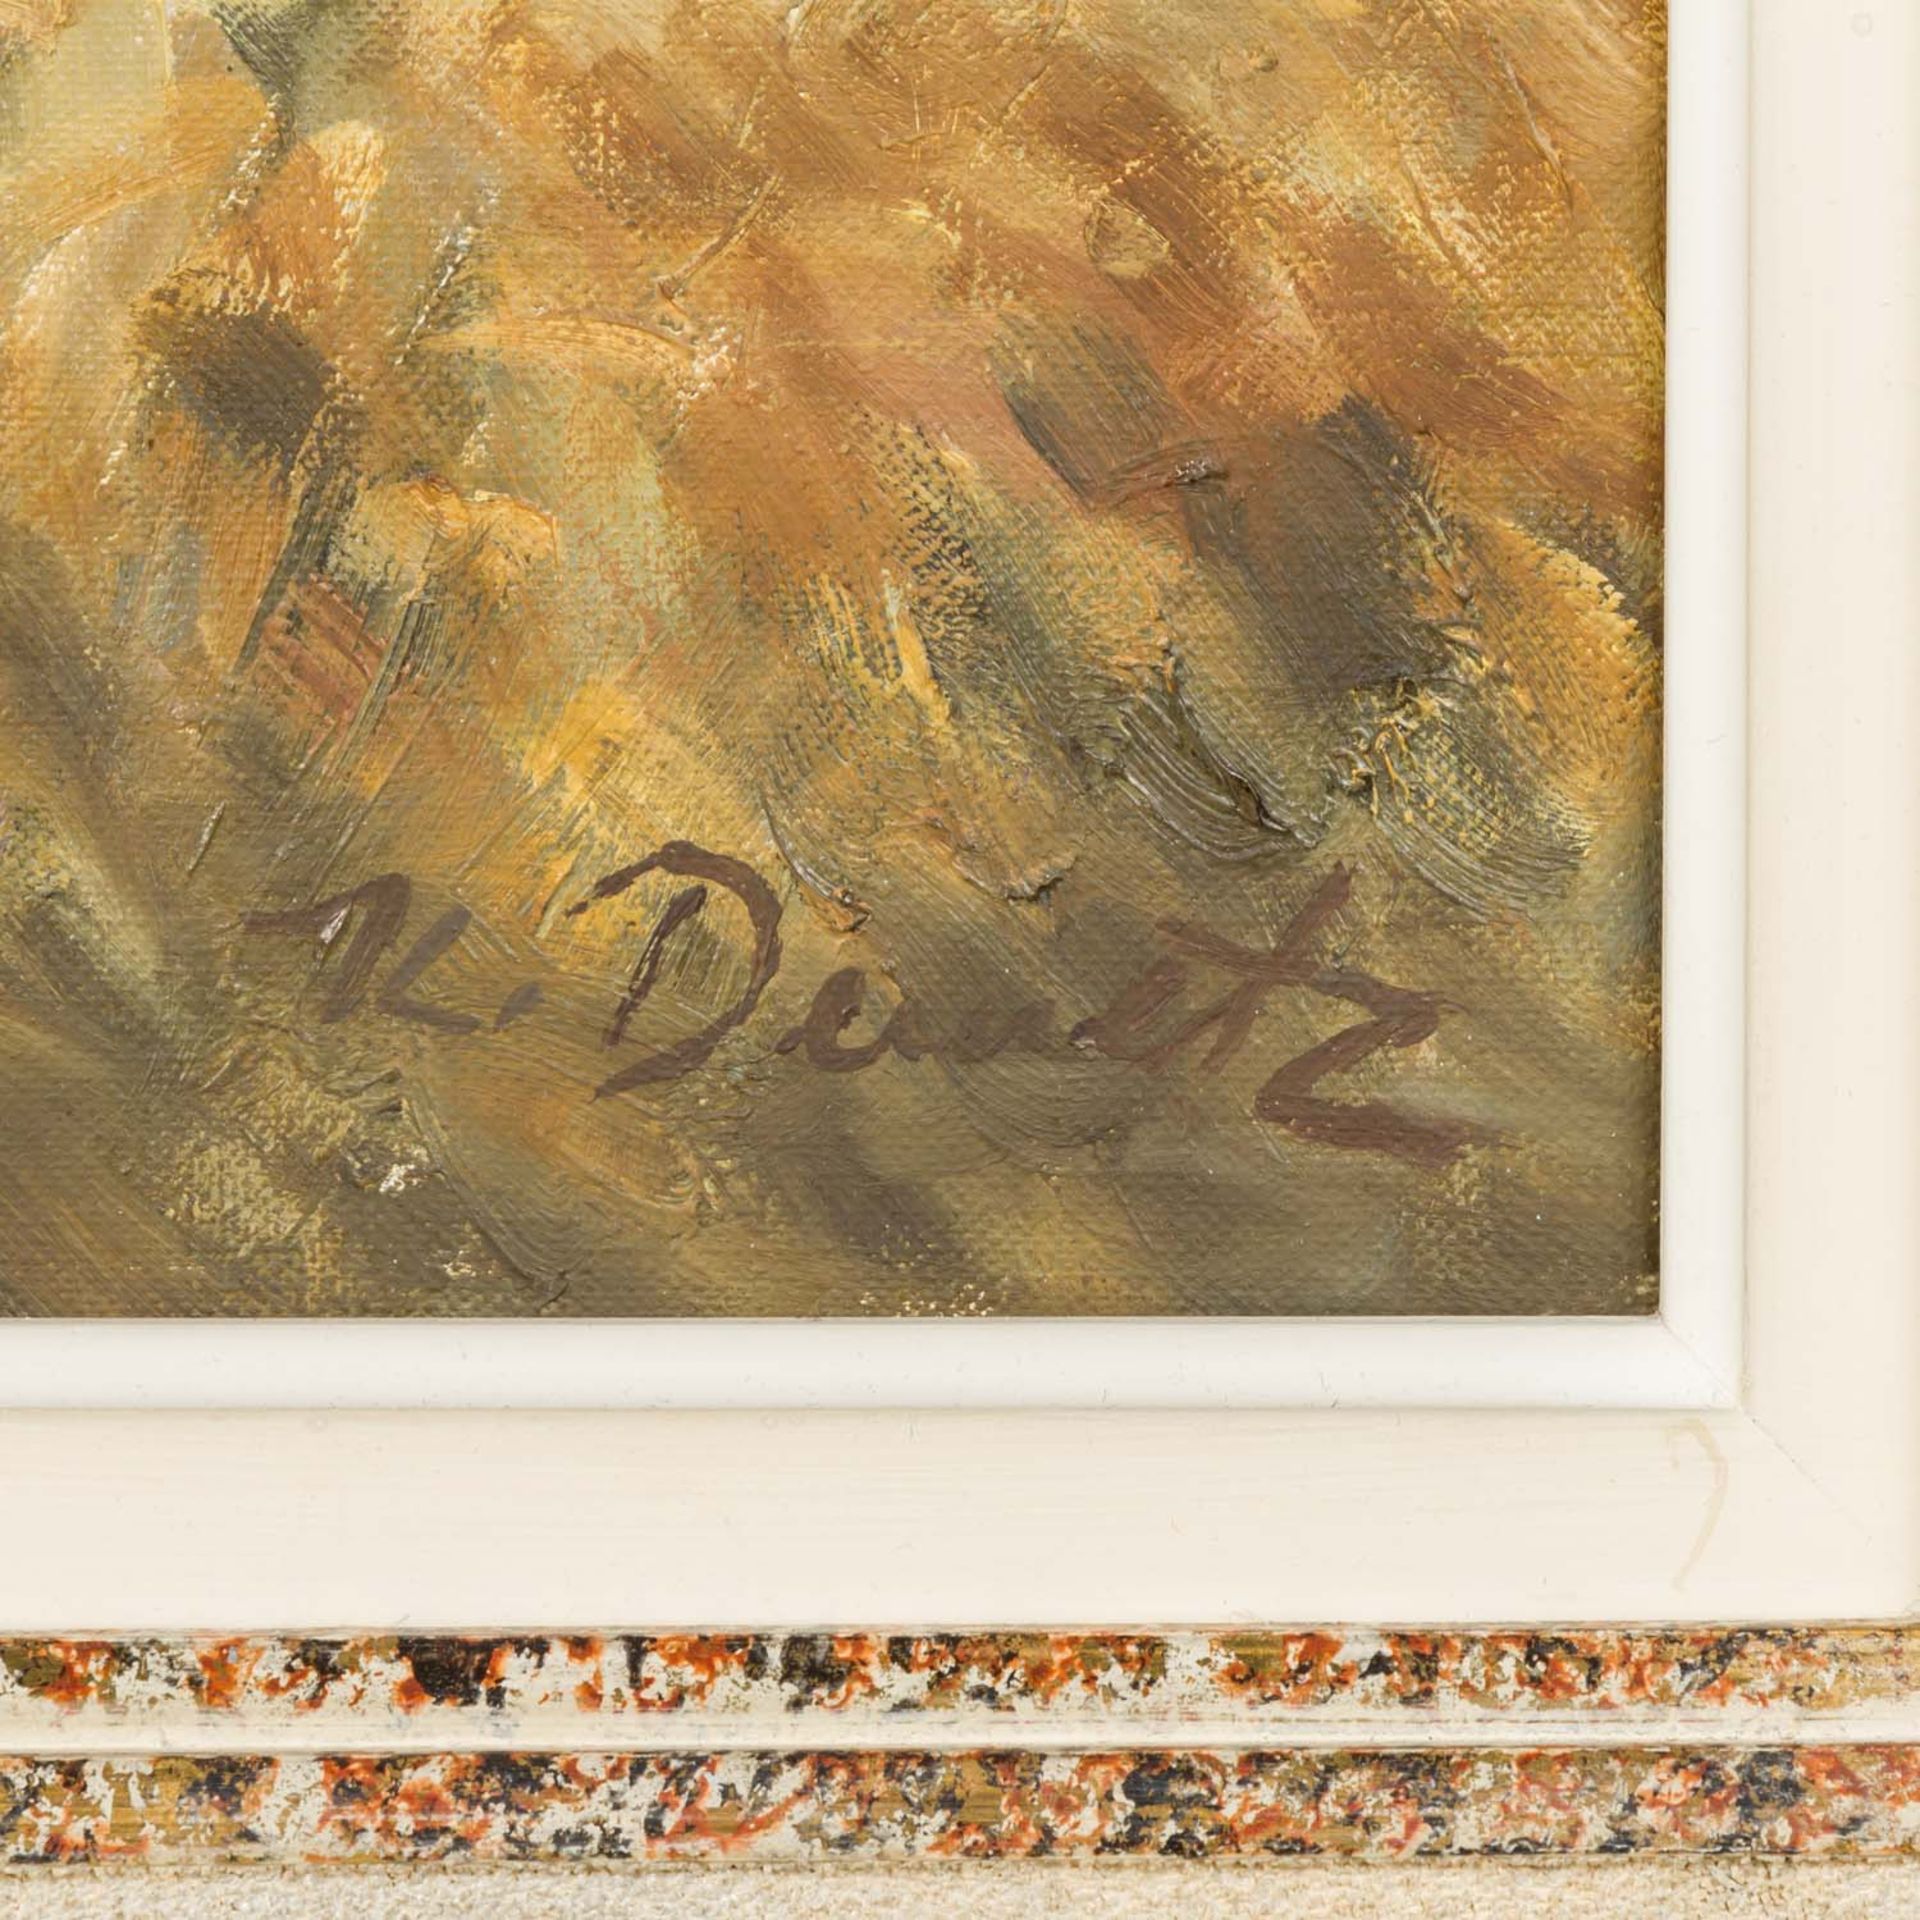 DEMETZ, KARL (1909-1986) "Heuwagen" Öl auf Leinwand, signiert, HxB: 80/100 cm., gerah - Image 3 of 4